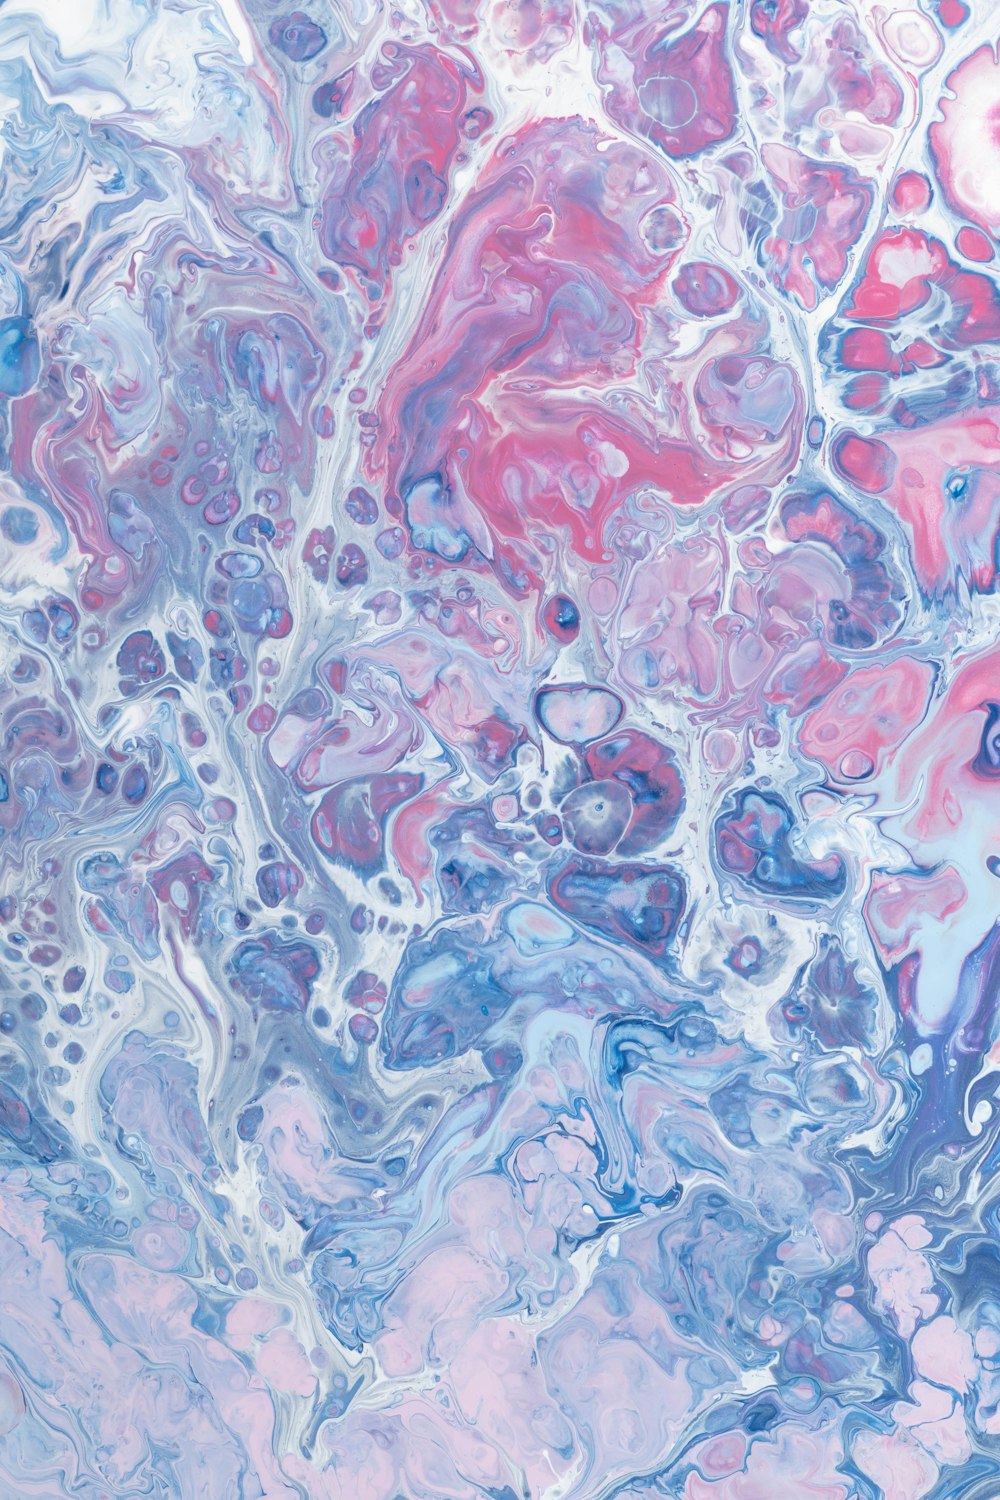 Eine Nahaufnahme eines abstrakten Gemäldes mit blauen, rosa und violetten Farben